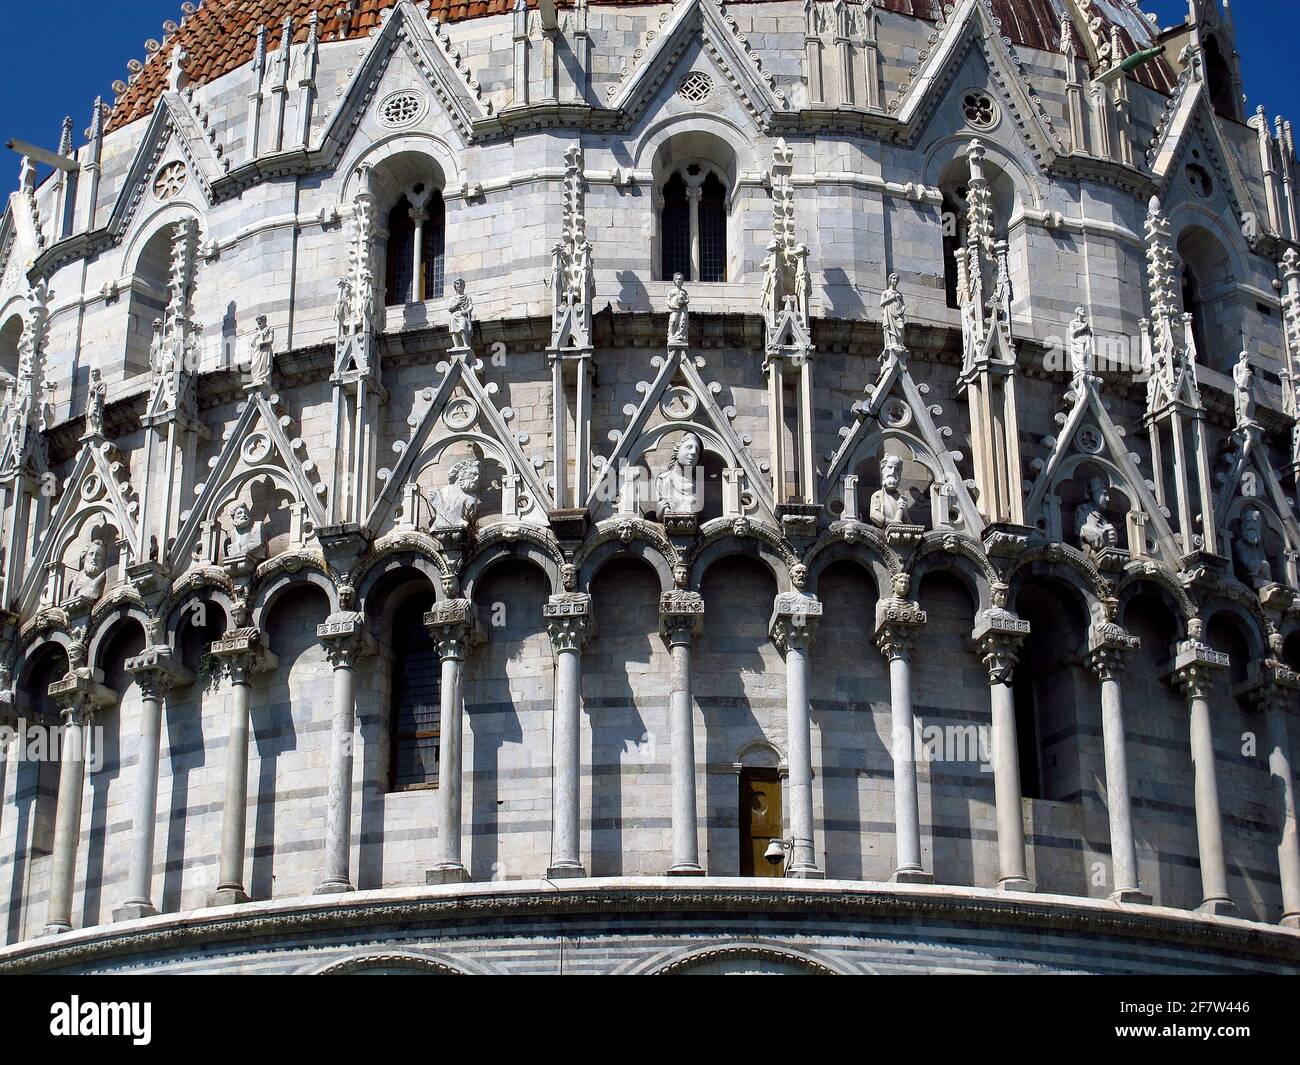 St. John's Baptistery, Pisa, Italy Stock Photo